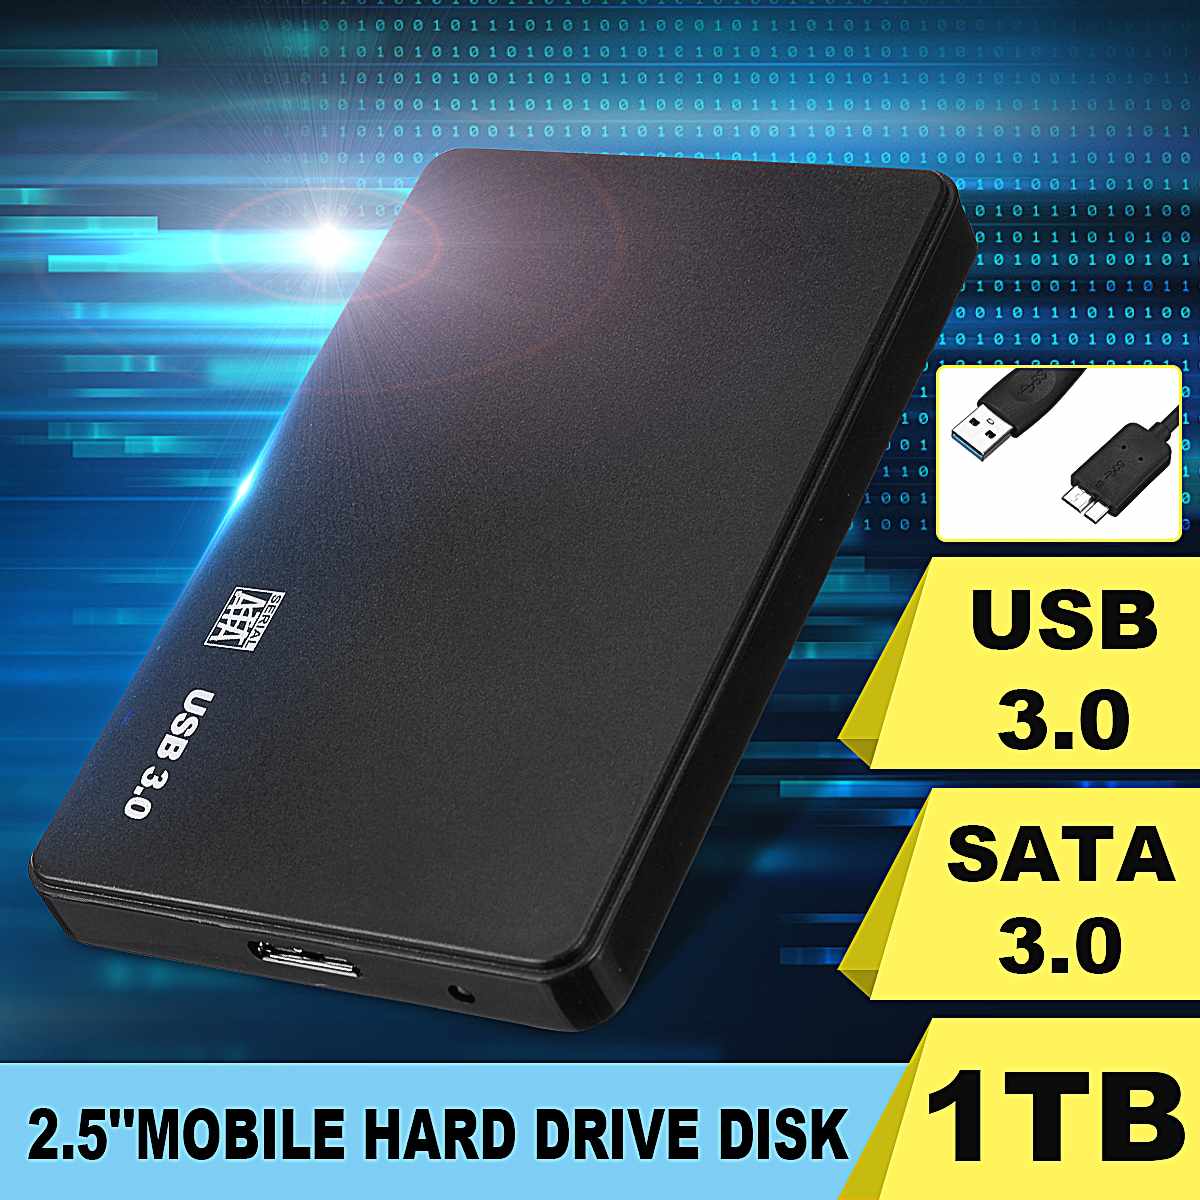 2.5 mobil harddisk usb 3.0 sata 3.0 1tb 2tb hdd diskotek duro eksterne eksterne harddiske til bærbar / mac